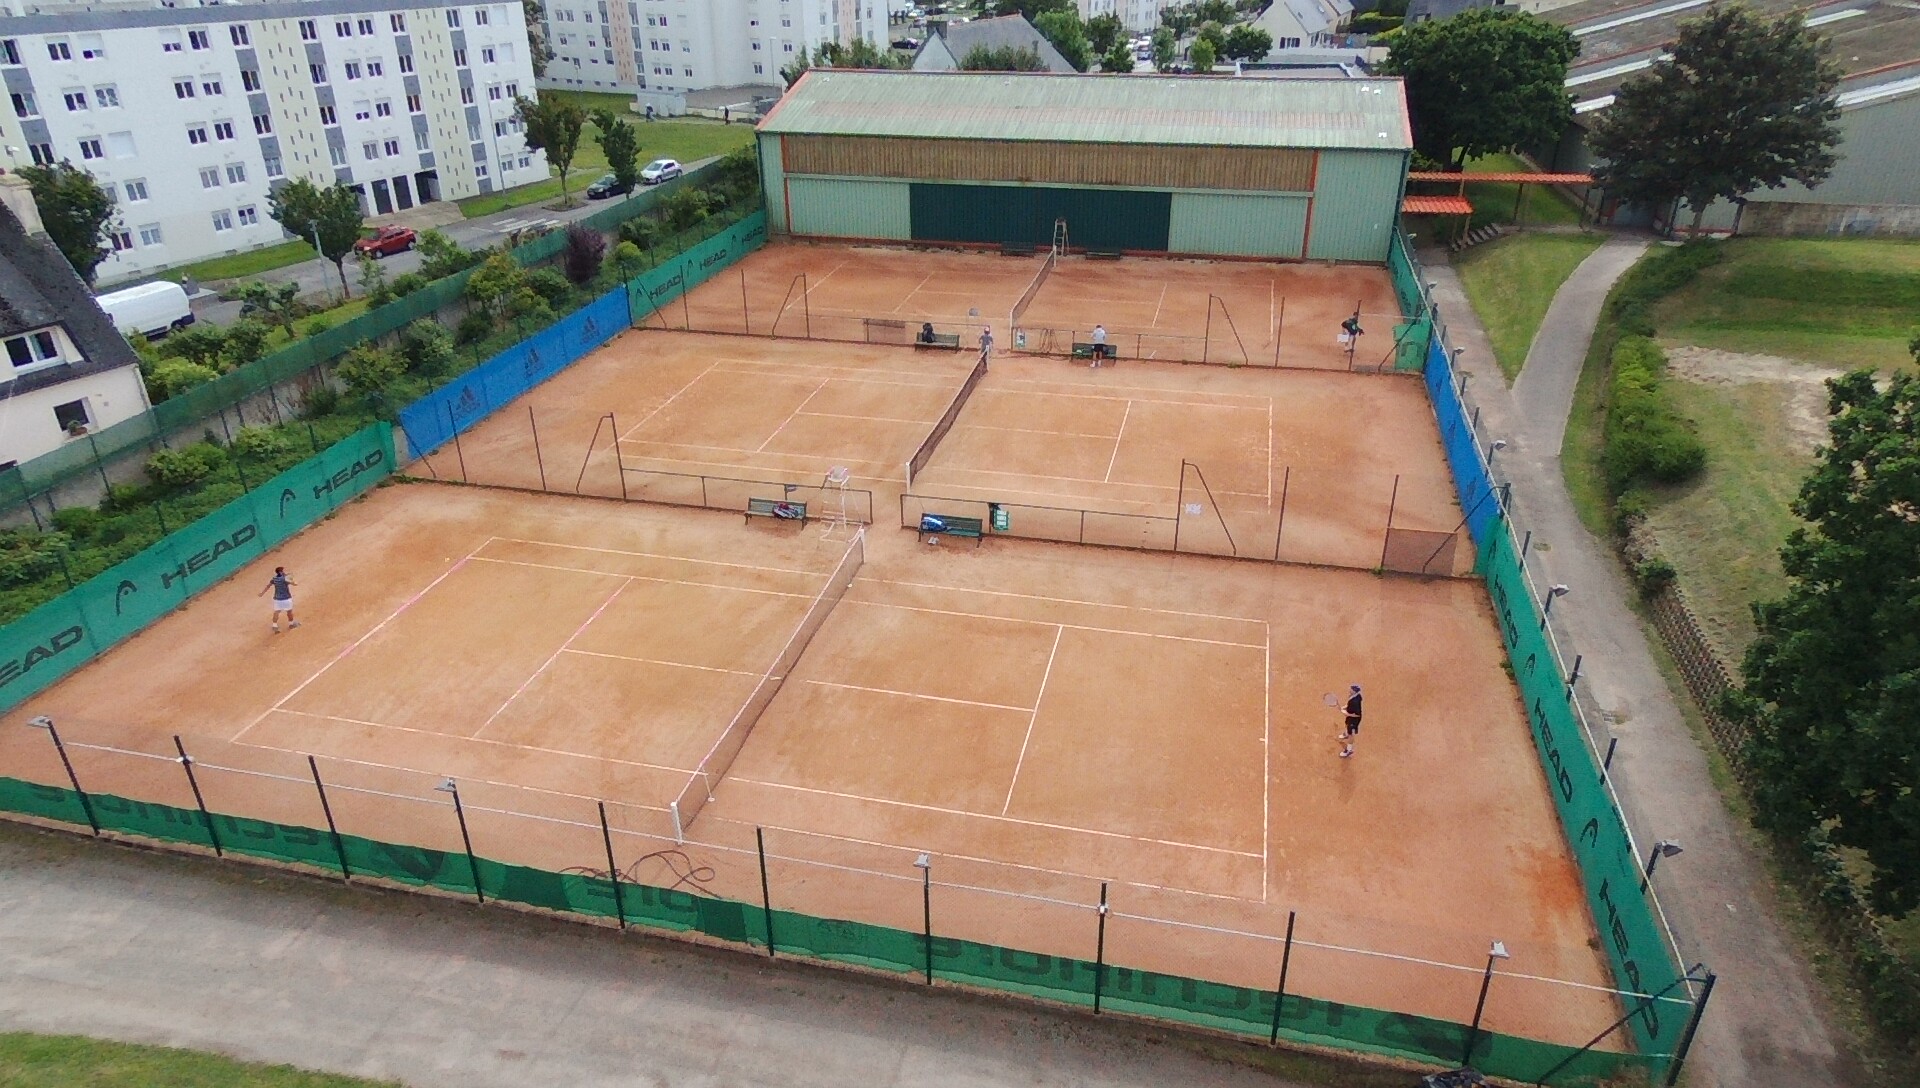 Tennis club Brestois